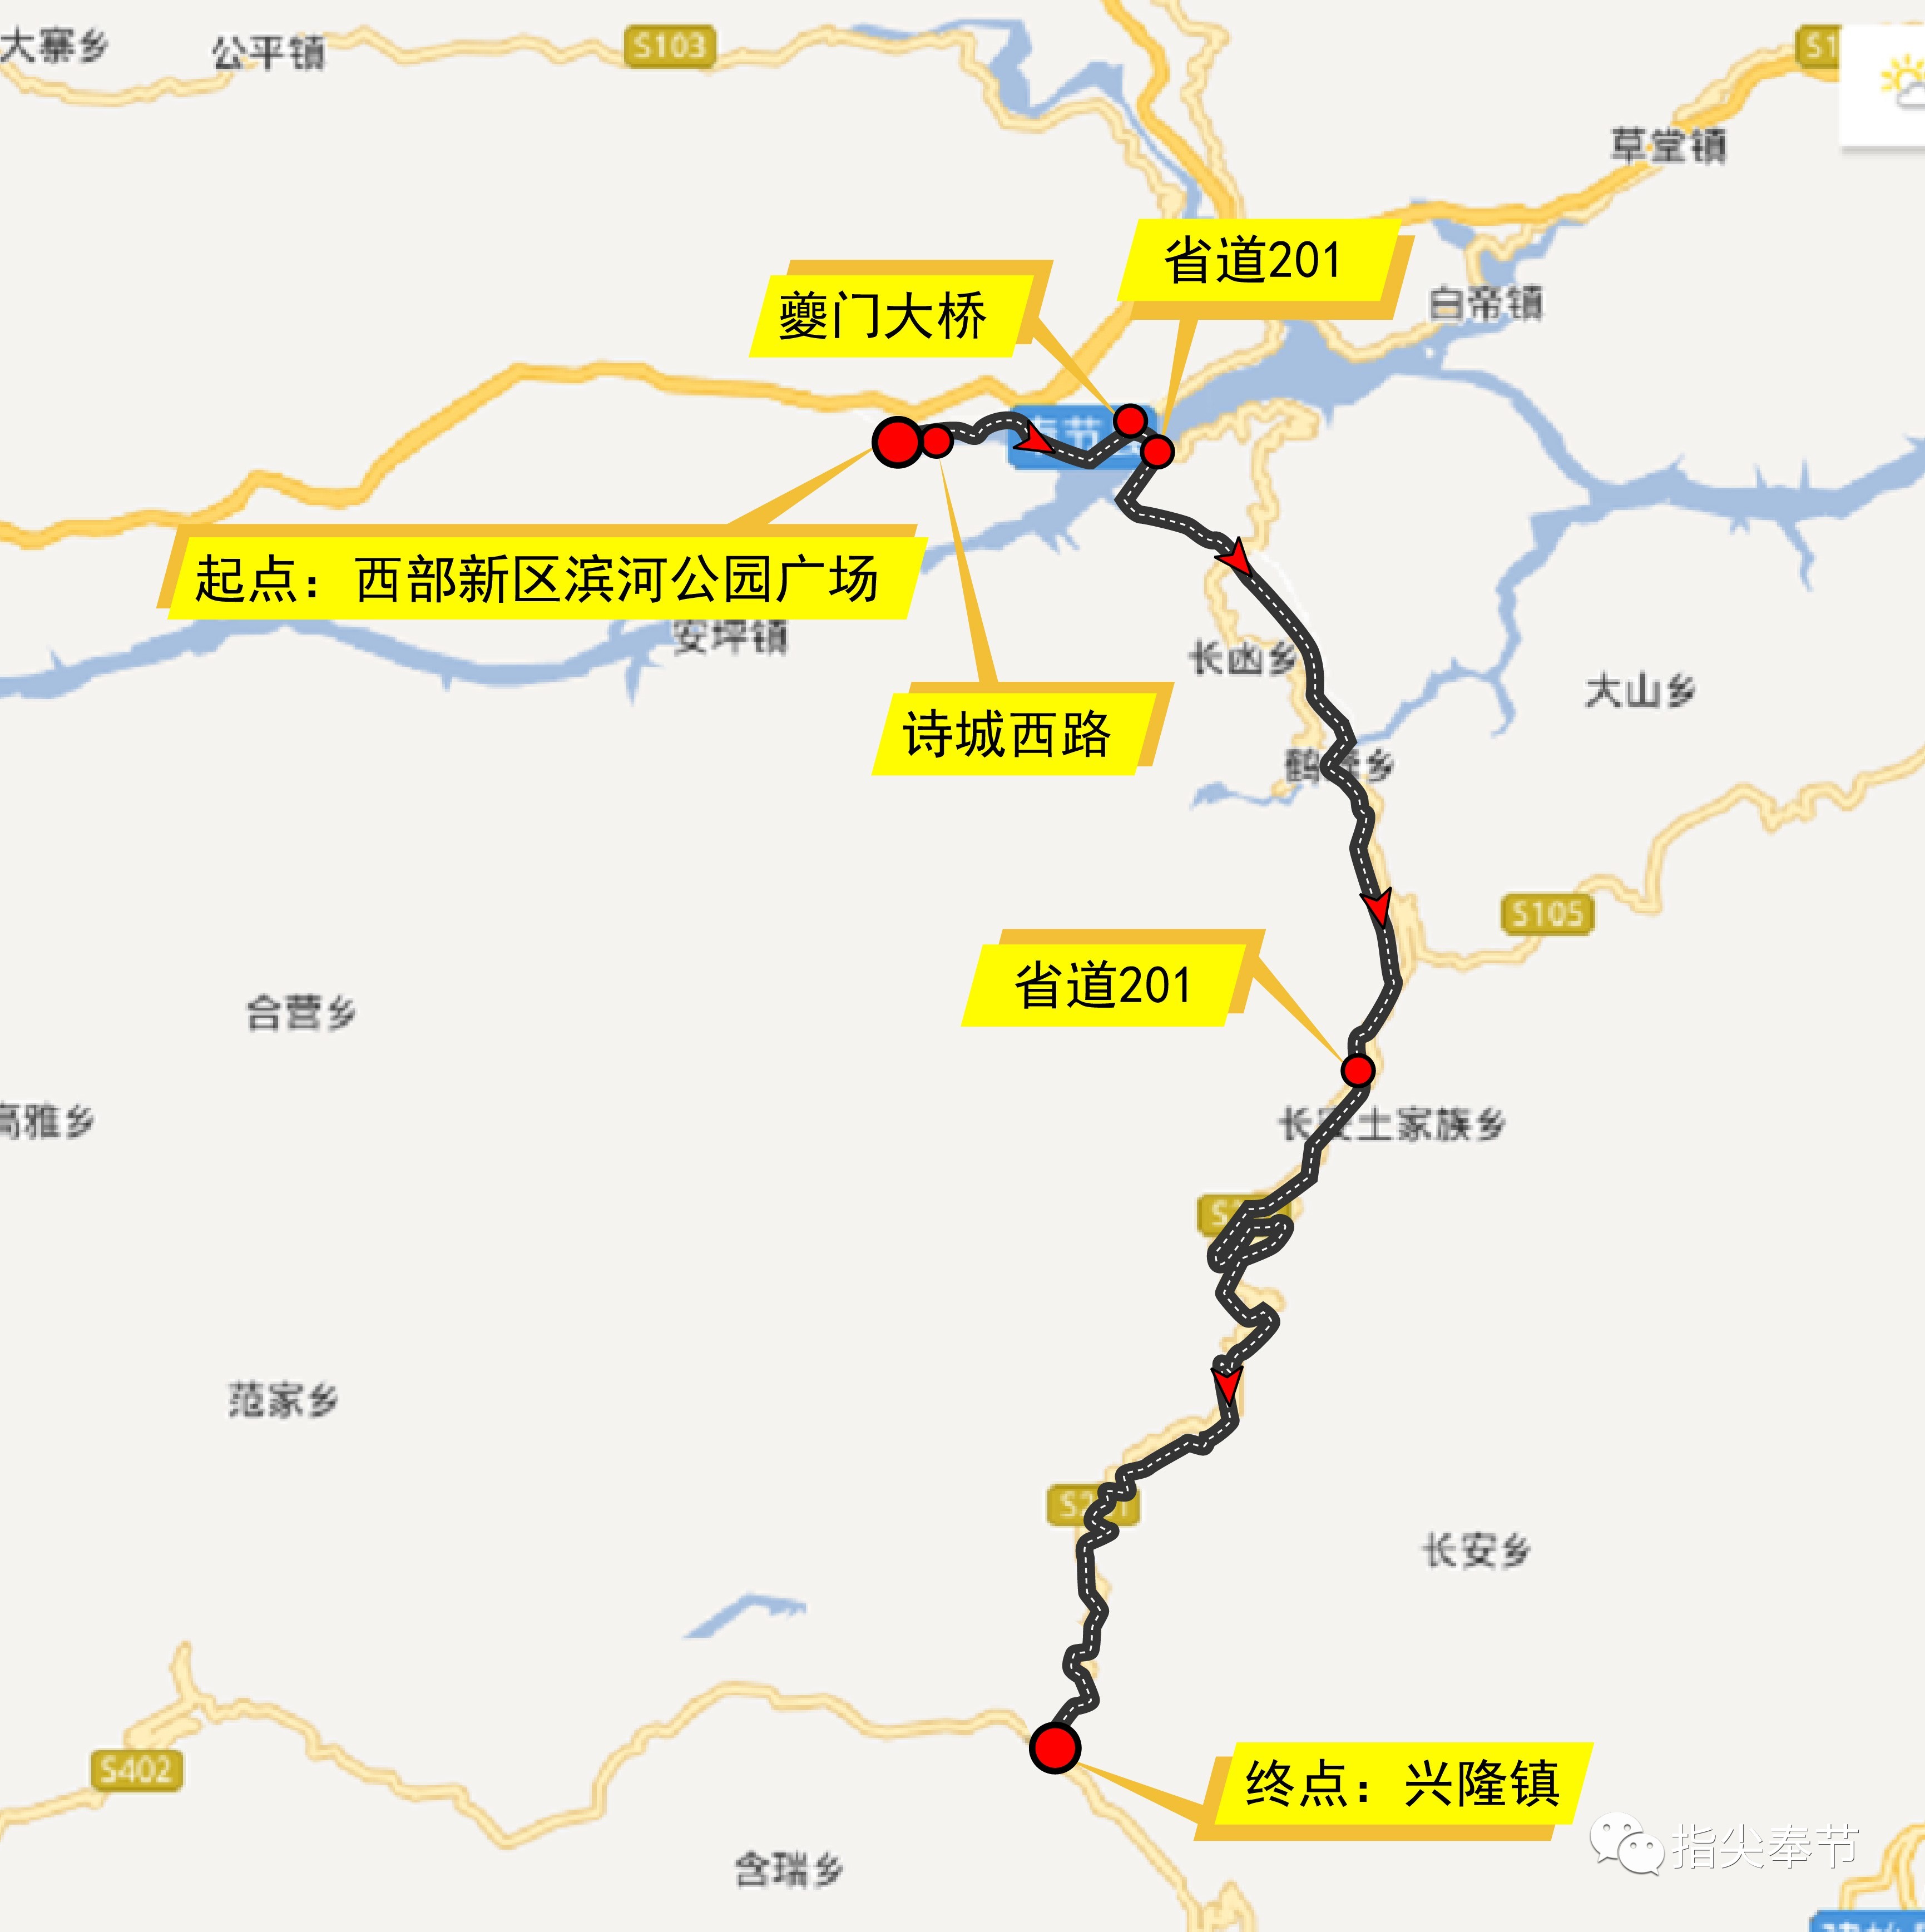 2017年8月12日 附 2017年中国自行车联赛重庆·奉节三峡之巅站路线图